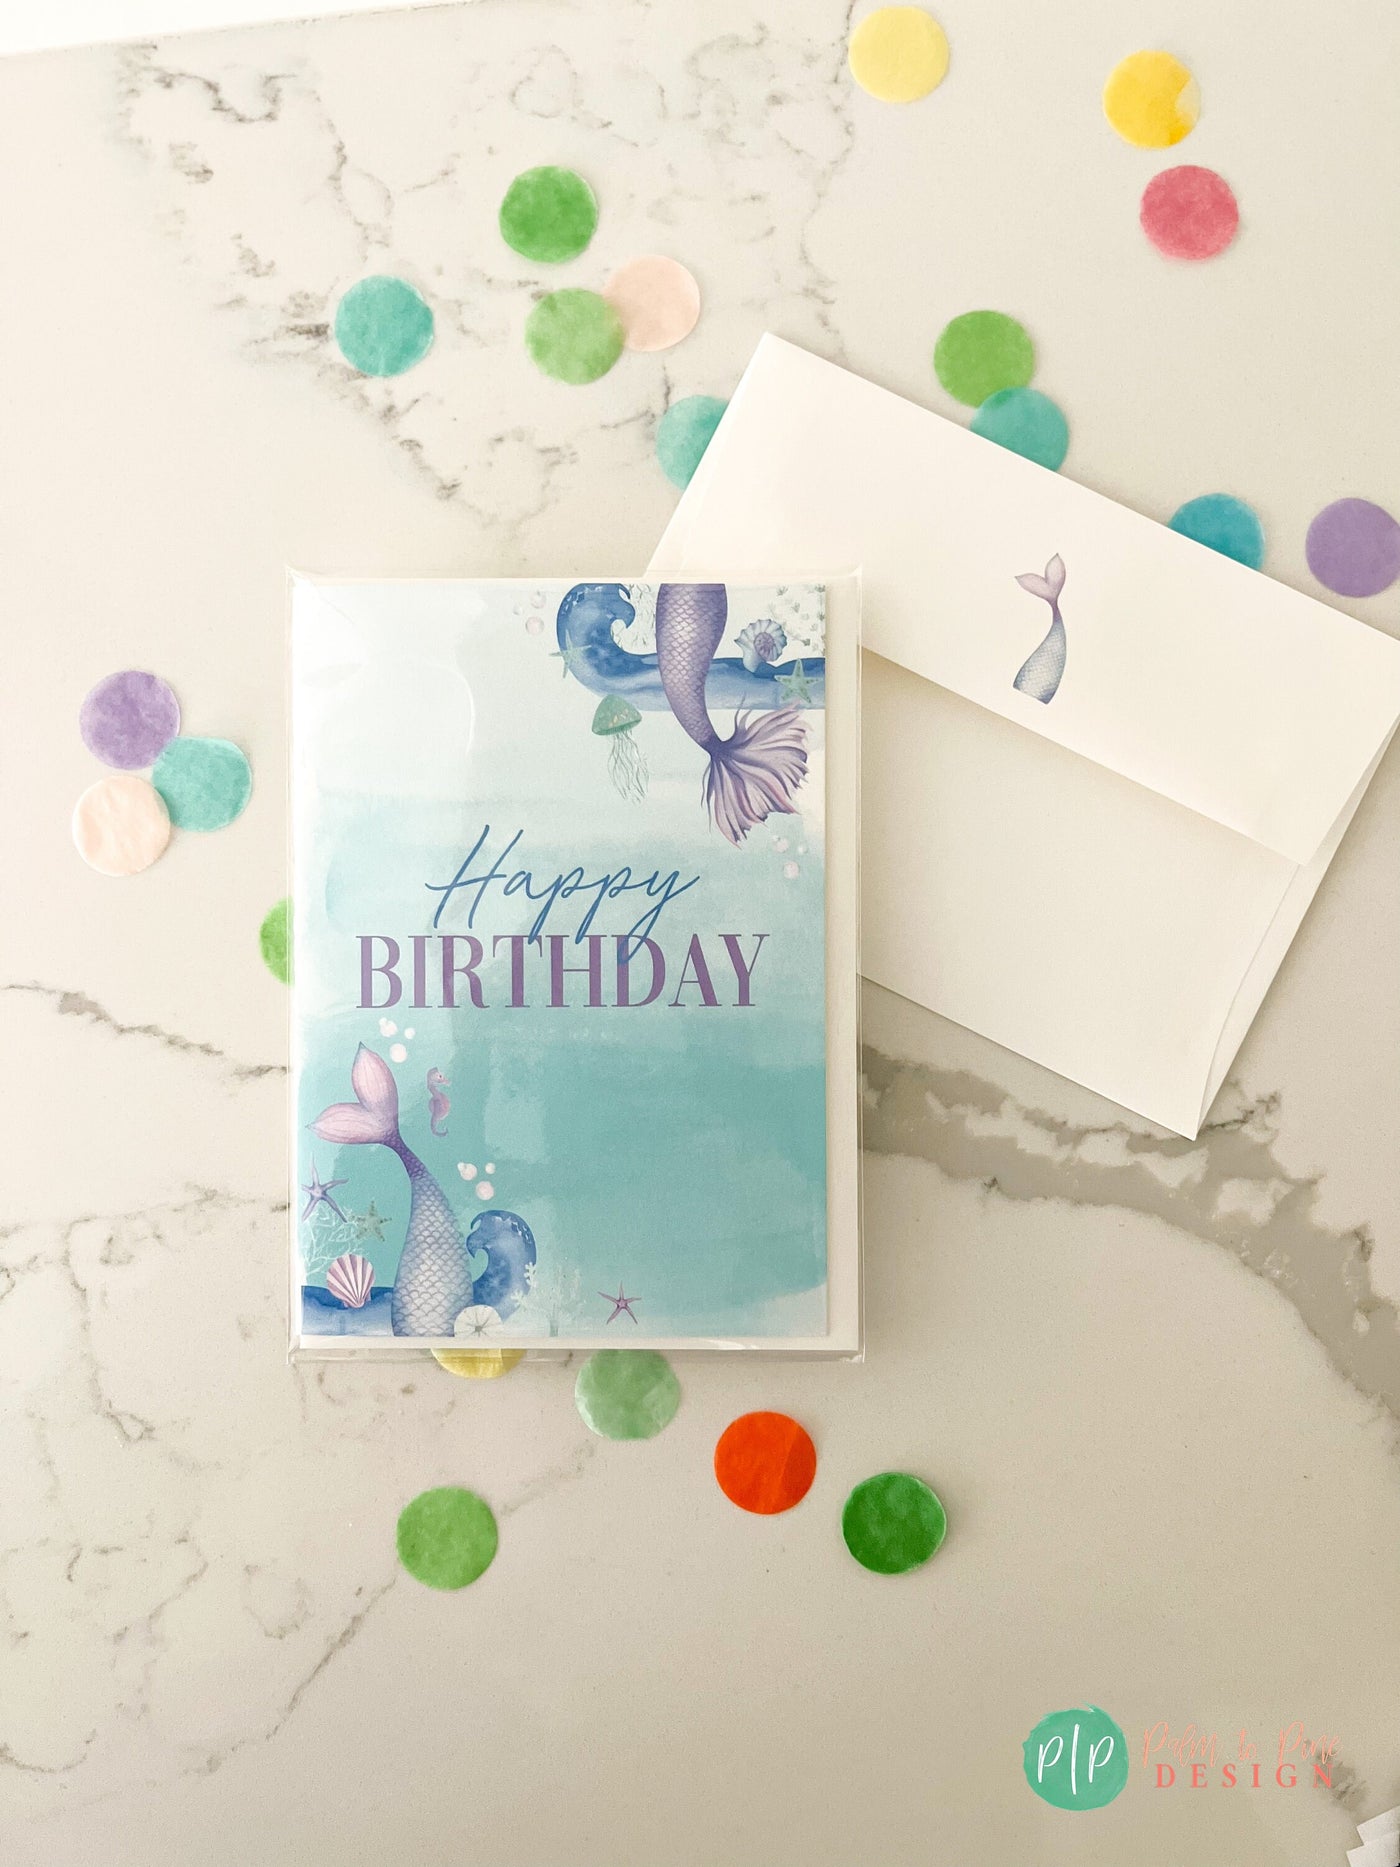 Happy birthday Card, Mermaid Birthday Card, Kids Birthday Greeting Card, Girl Birthday Personalized Card, Printed Mermaid Birthday Card, 5x7